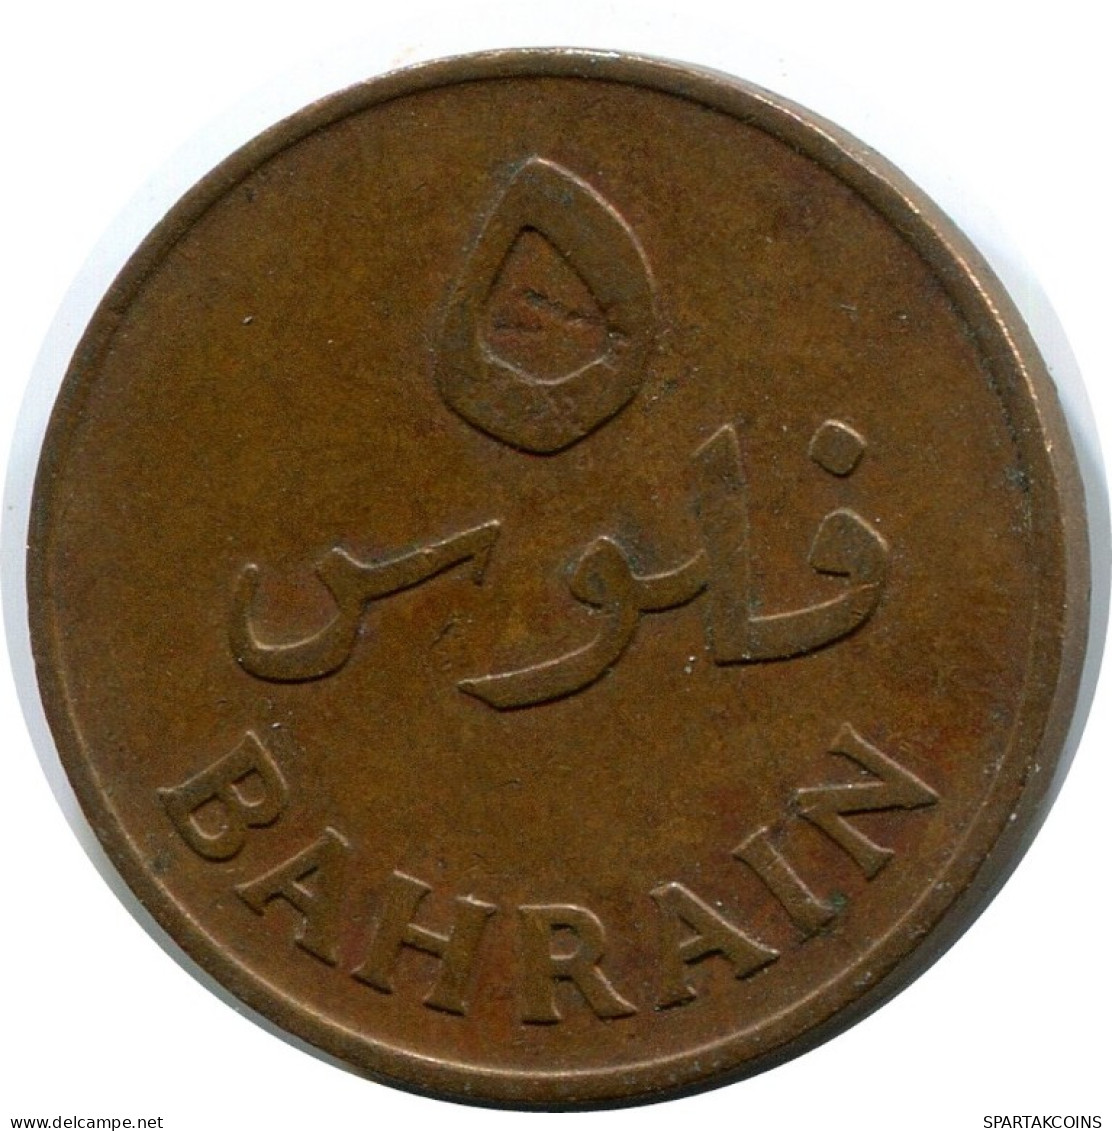 5 FILS 1965 BAHRAIN Islamic Coin #AK179.U.A - Bahrein